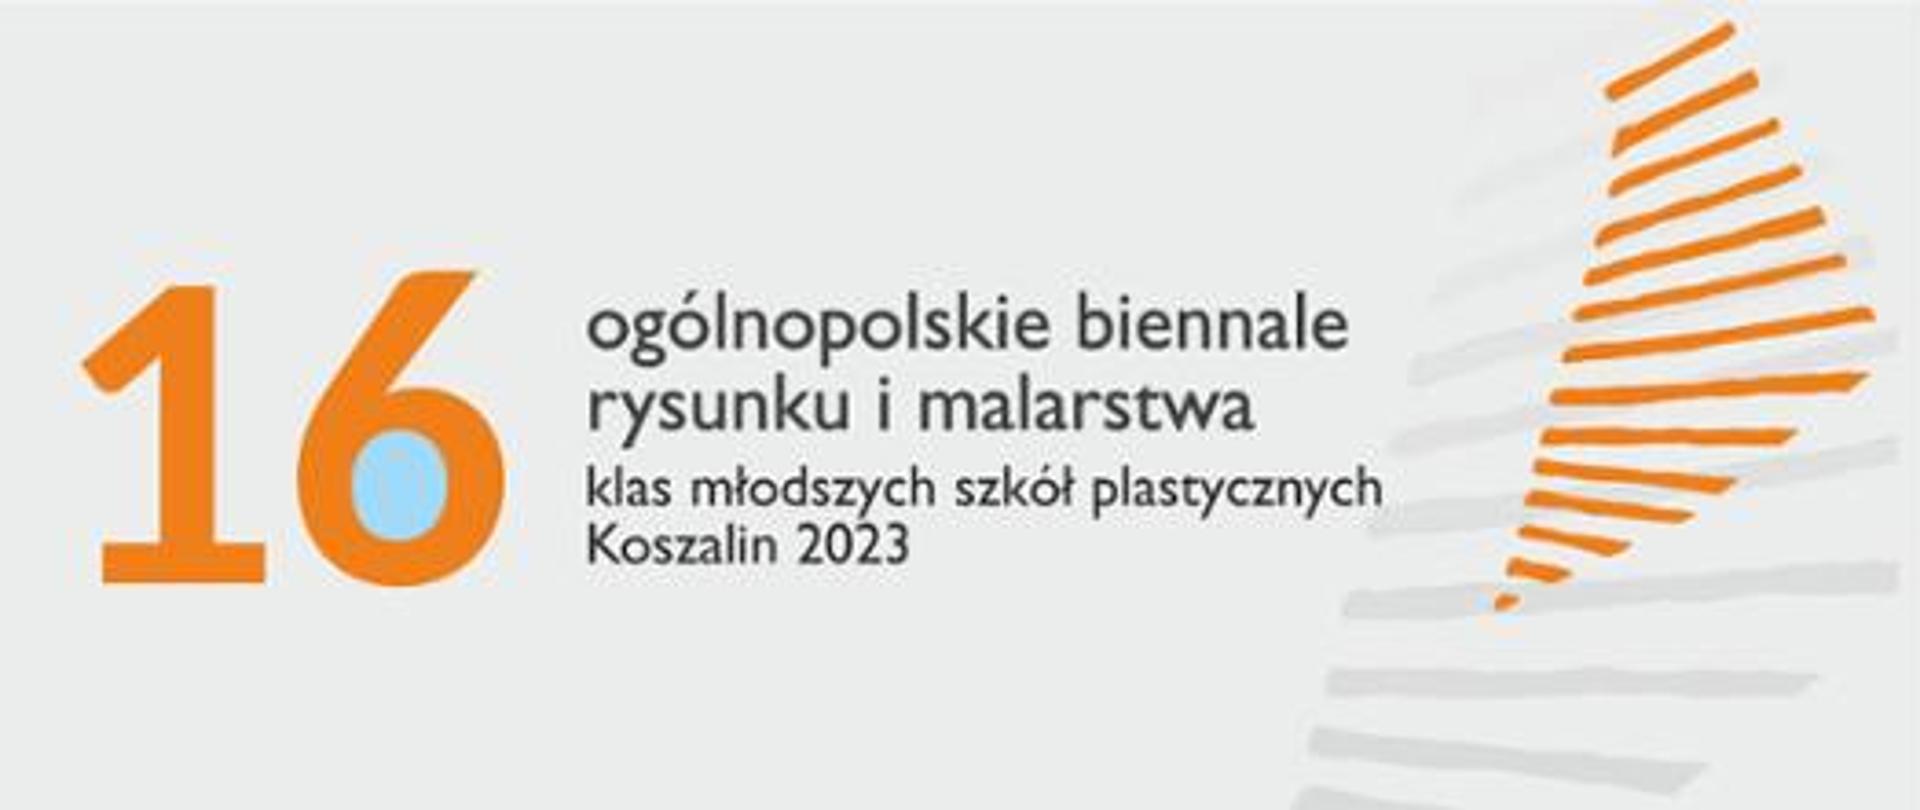 Baner w kolorystyce biało-pomarańczowo-czarnej zawierający napis 16 Ogólnopolskie Biennale Rysunku i Malarstwa Klas Młodszych Szkół Plastycznych Koszalin 2023 oraz element graficzny w postaci rozchodzących się promieni ujętych w formę zbliżoną do trójkąta